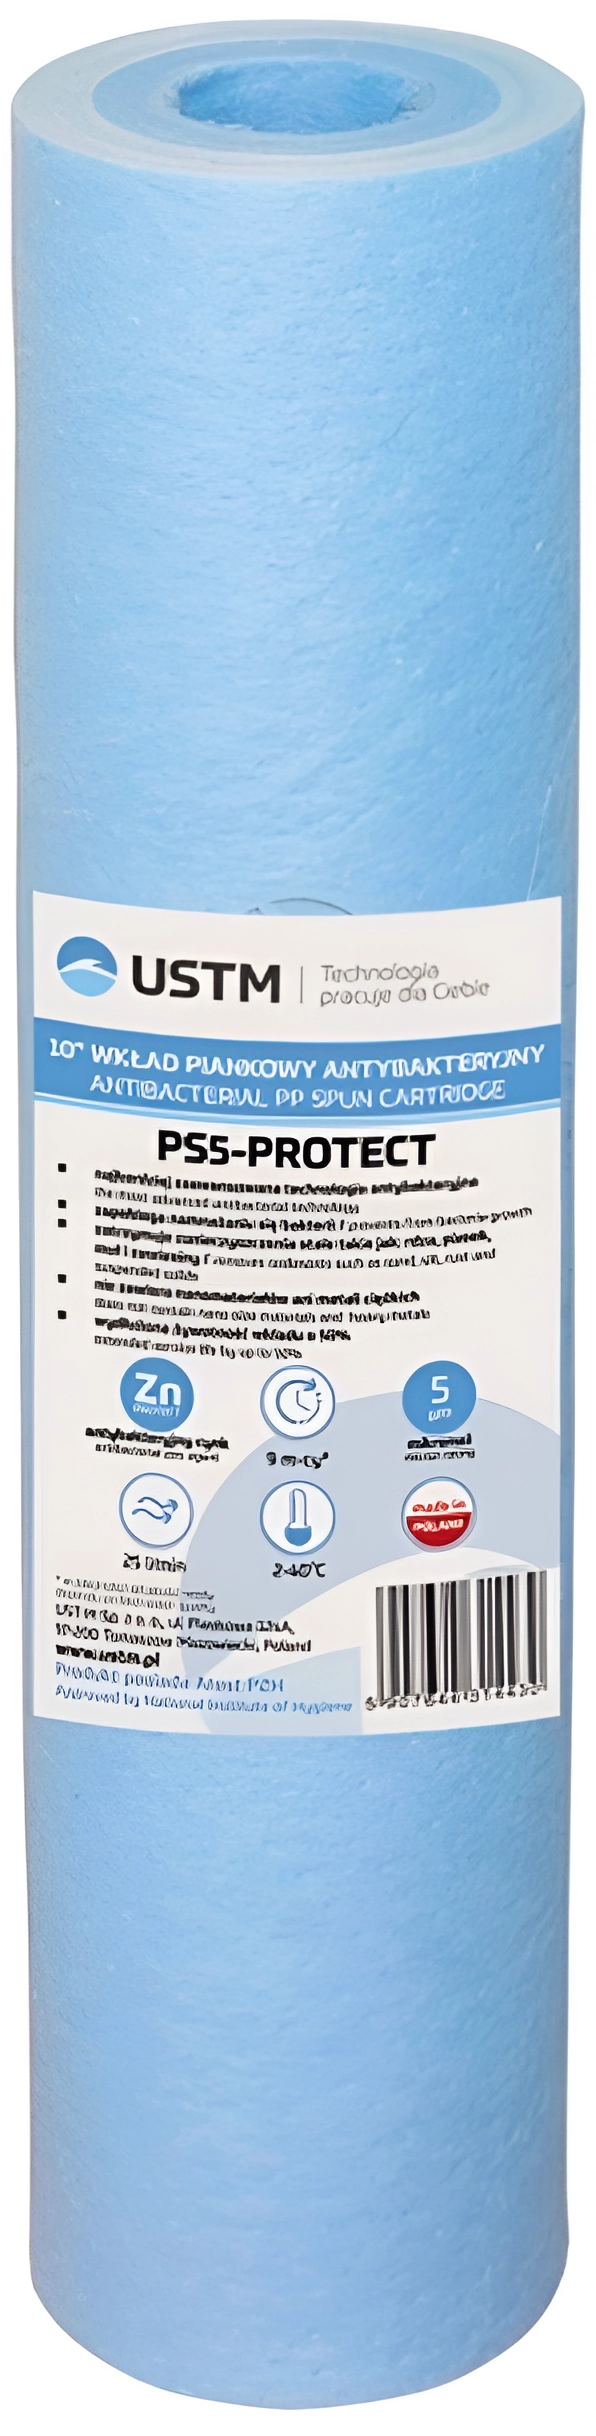 Картридж для фильтра USTM PS-5-Protect 10" в интернет-магазине, главное фото